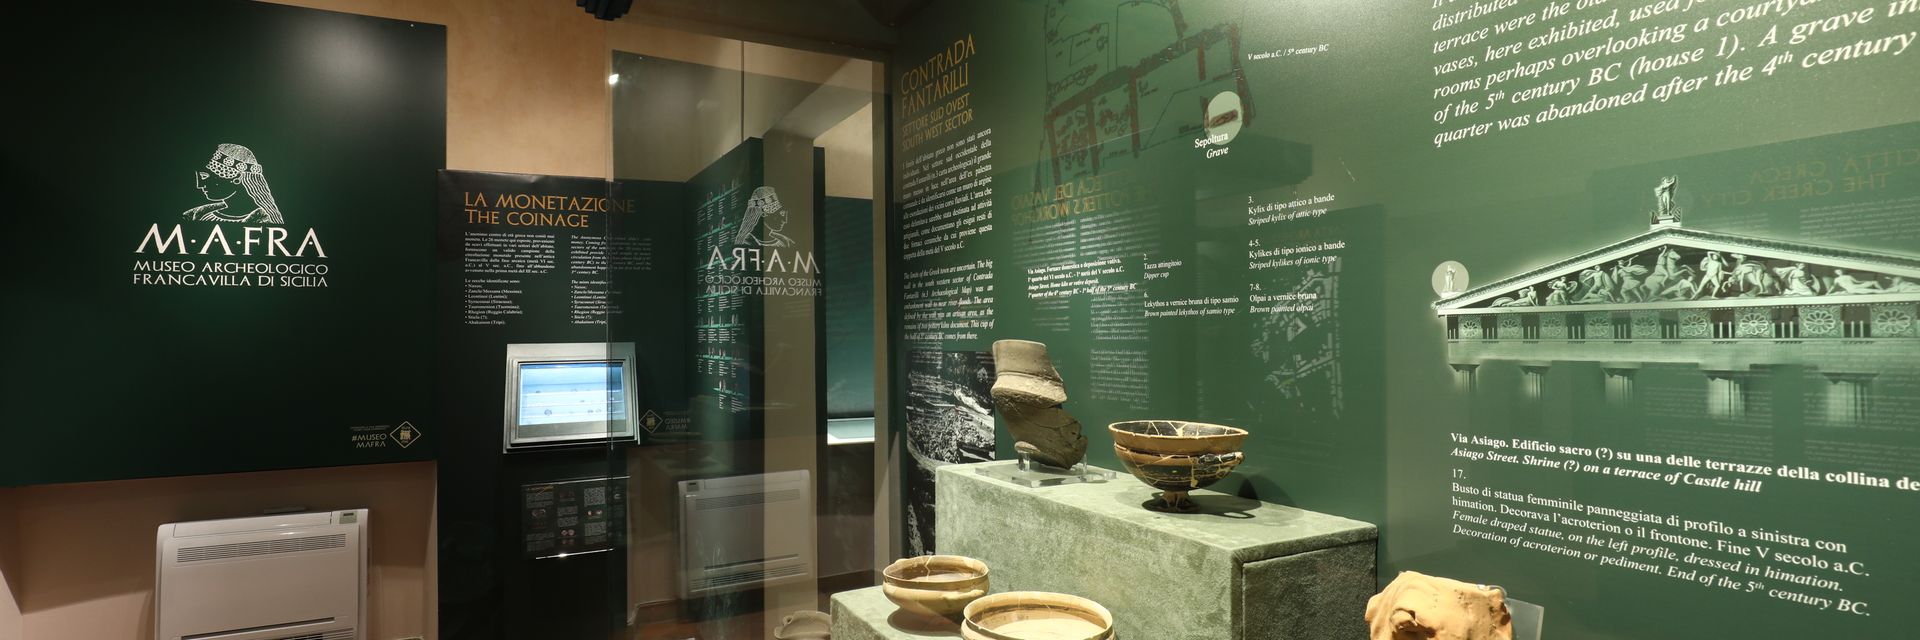 MAFRA - Musée Archéologique de Francavilla di Sicilia